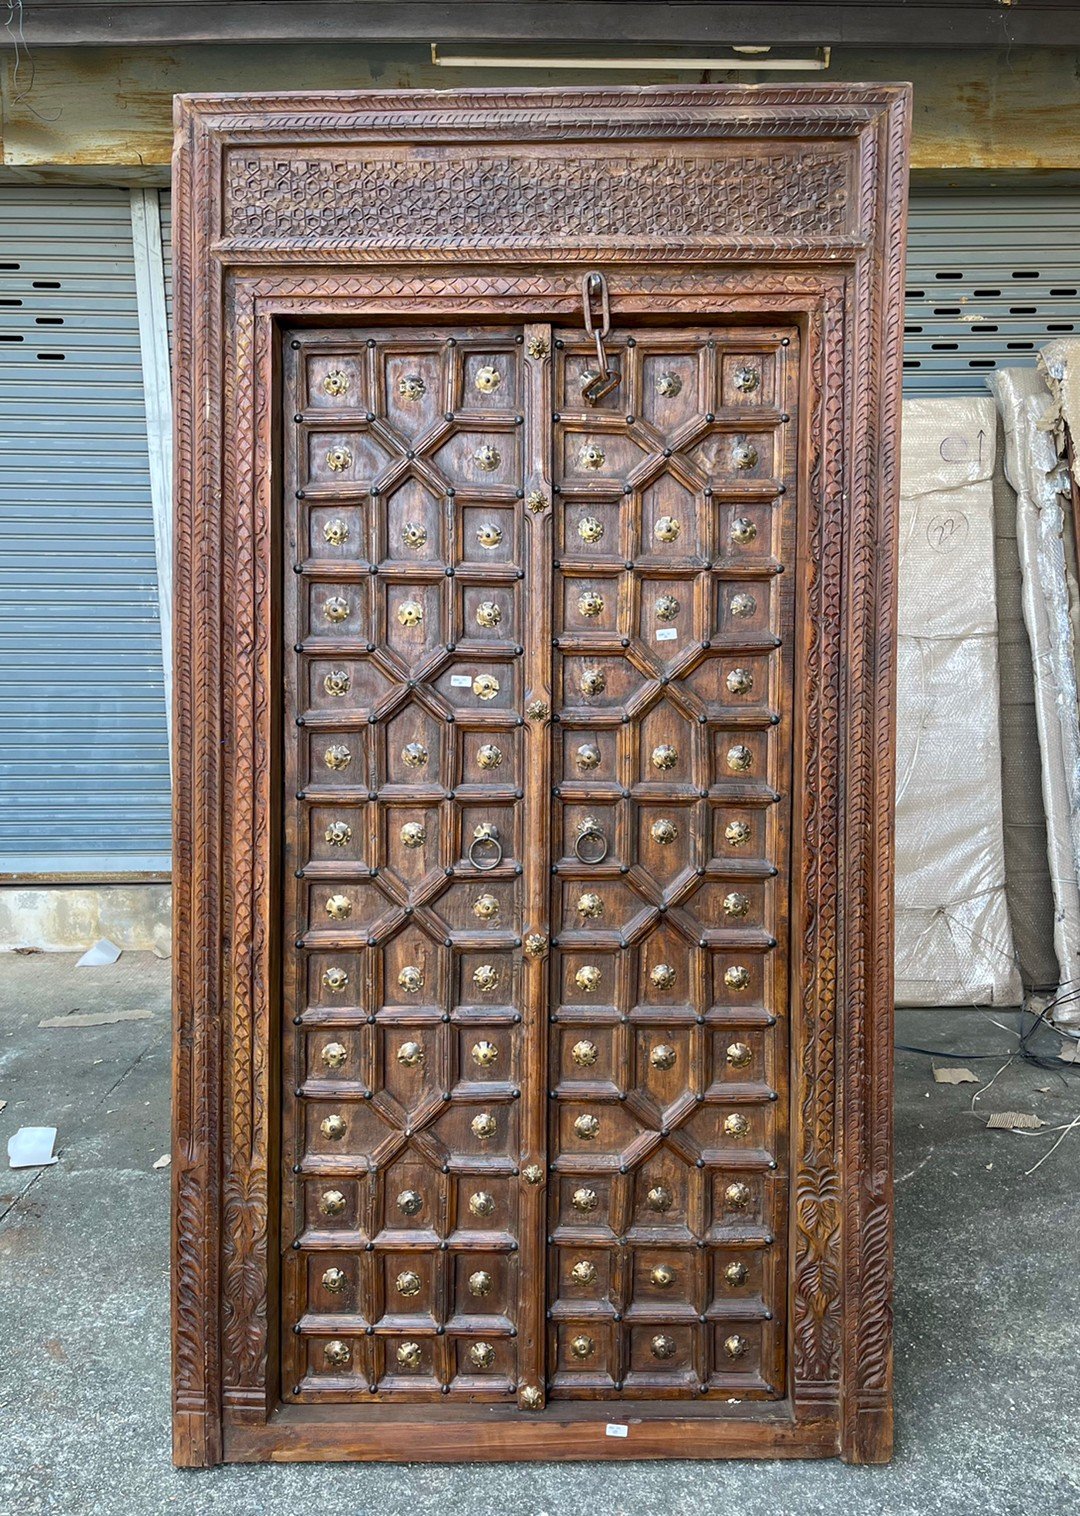 XL20 ประตูอินเดียไม้ทแยงแปลกตาแต่งทองเหลือง